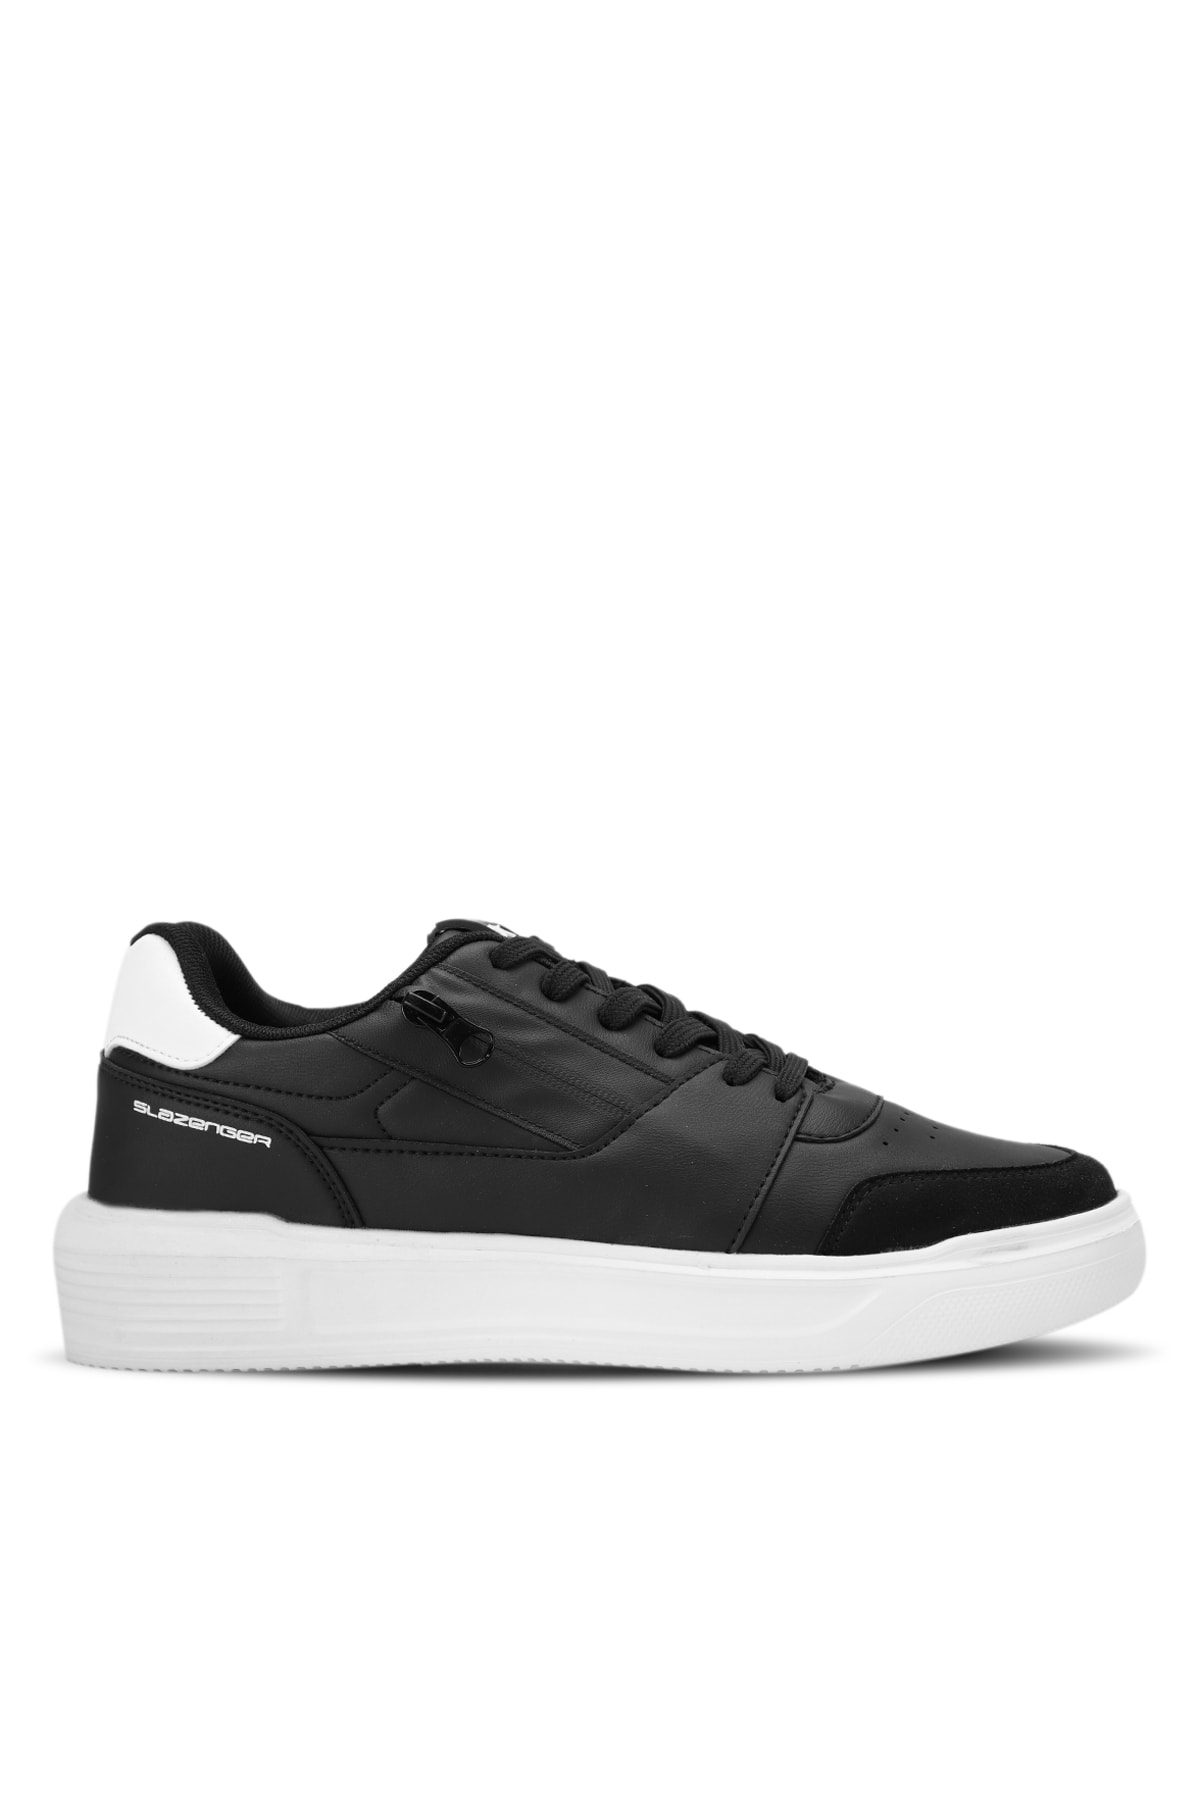 Slazenger LABEL Sneakers Men's Shoes Black / White